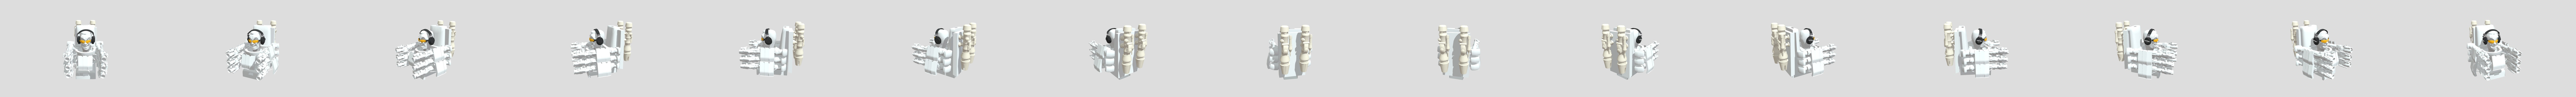 GMAN SKIBIDI TOILET - Download Free 3D model by pamm (@daeboommmm) [ab1576b]